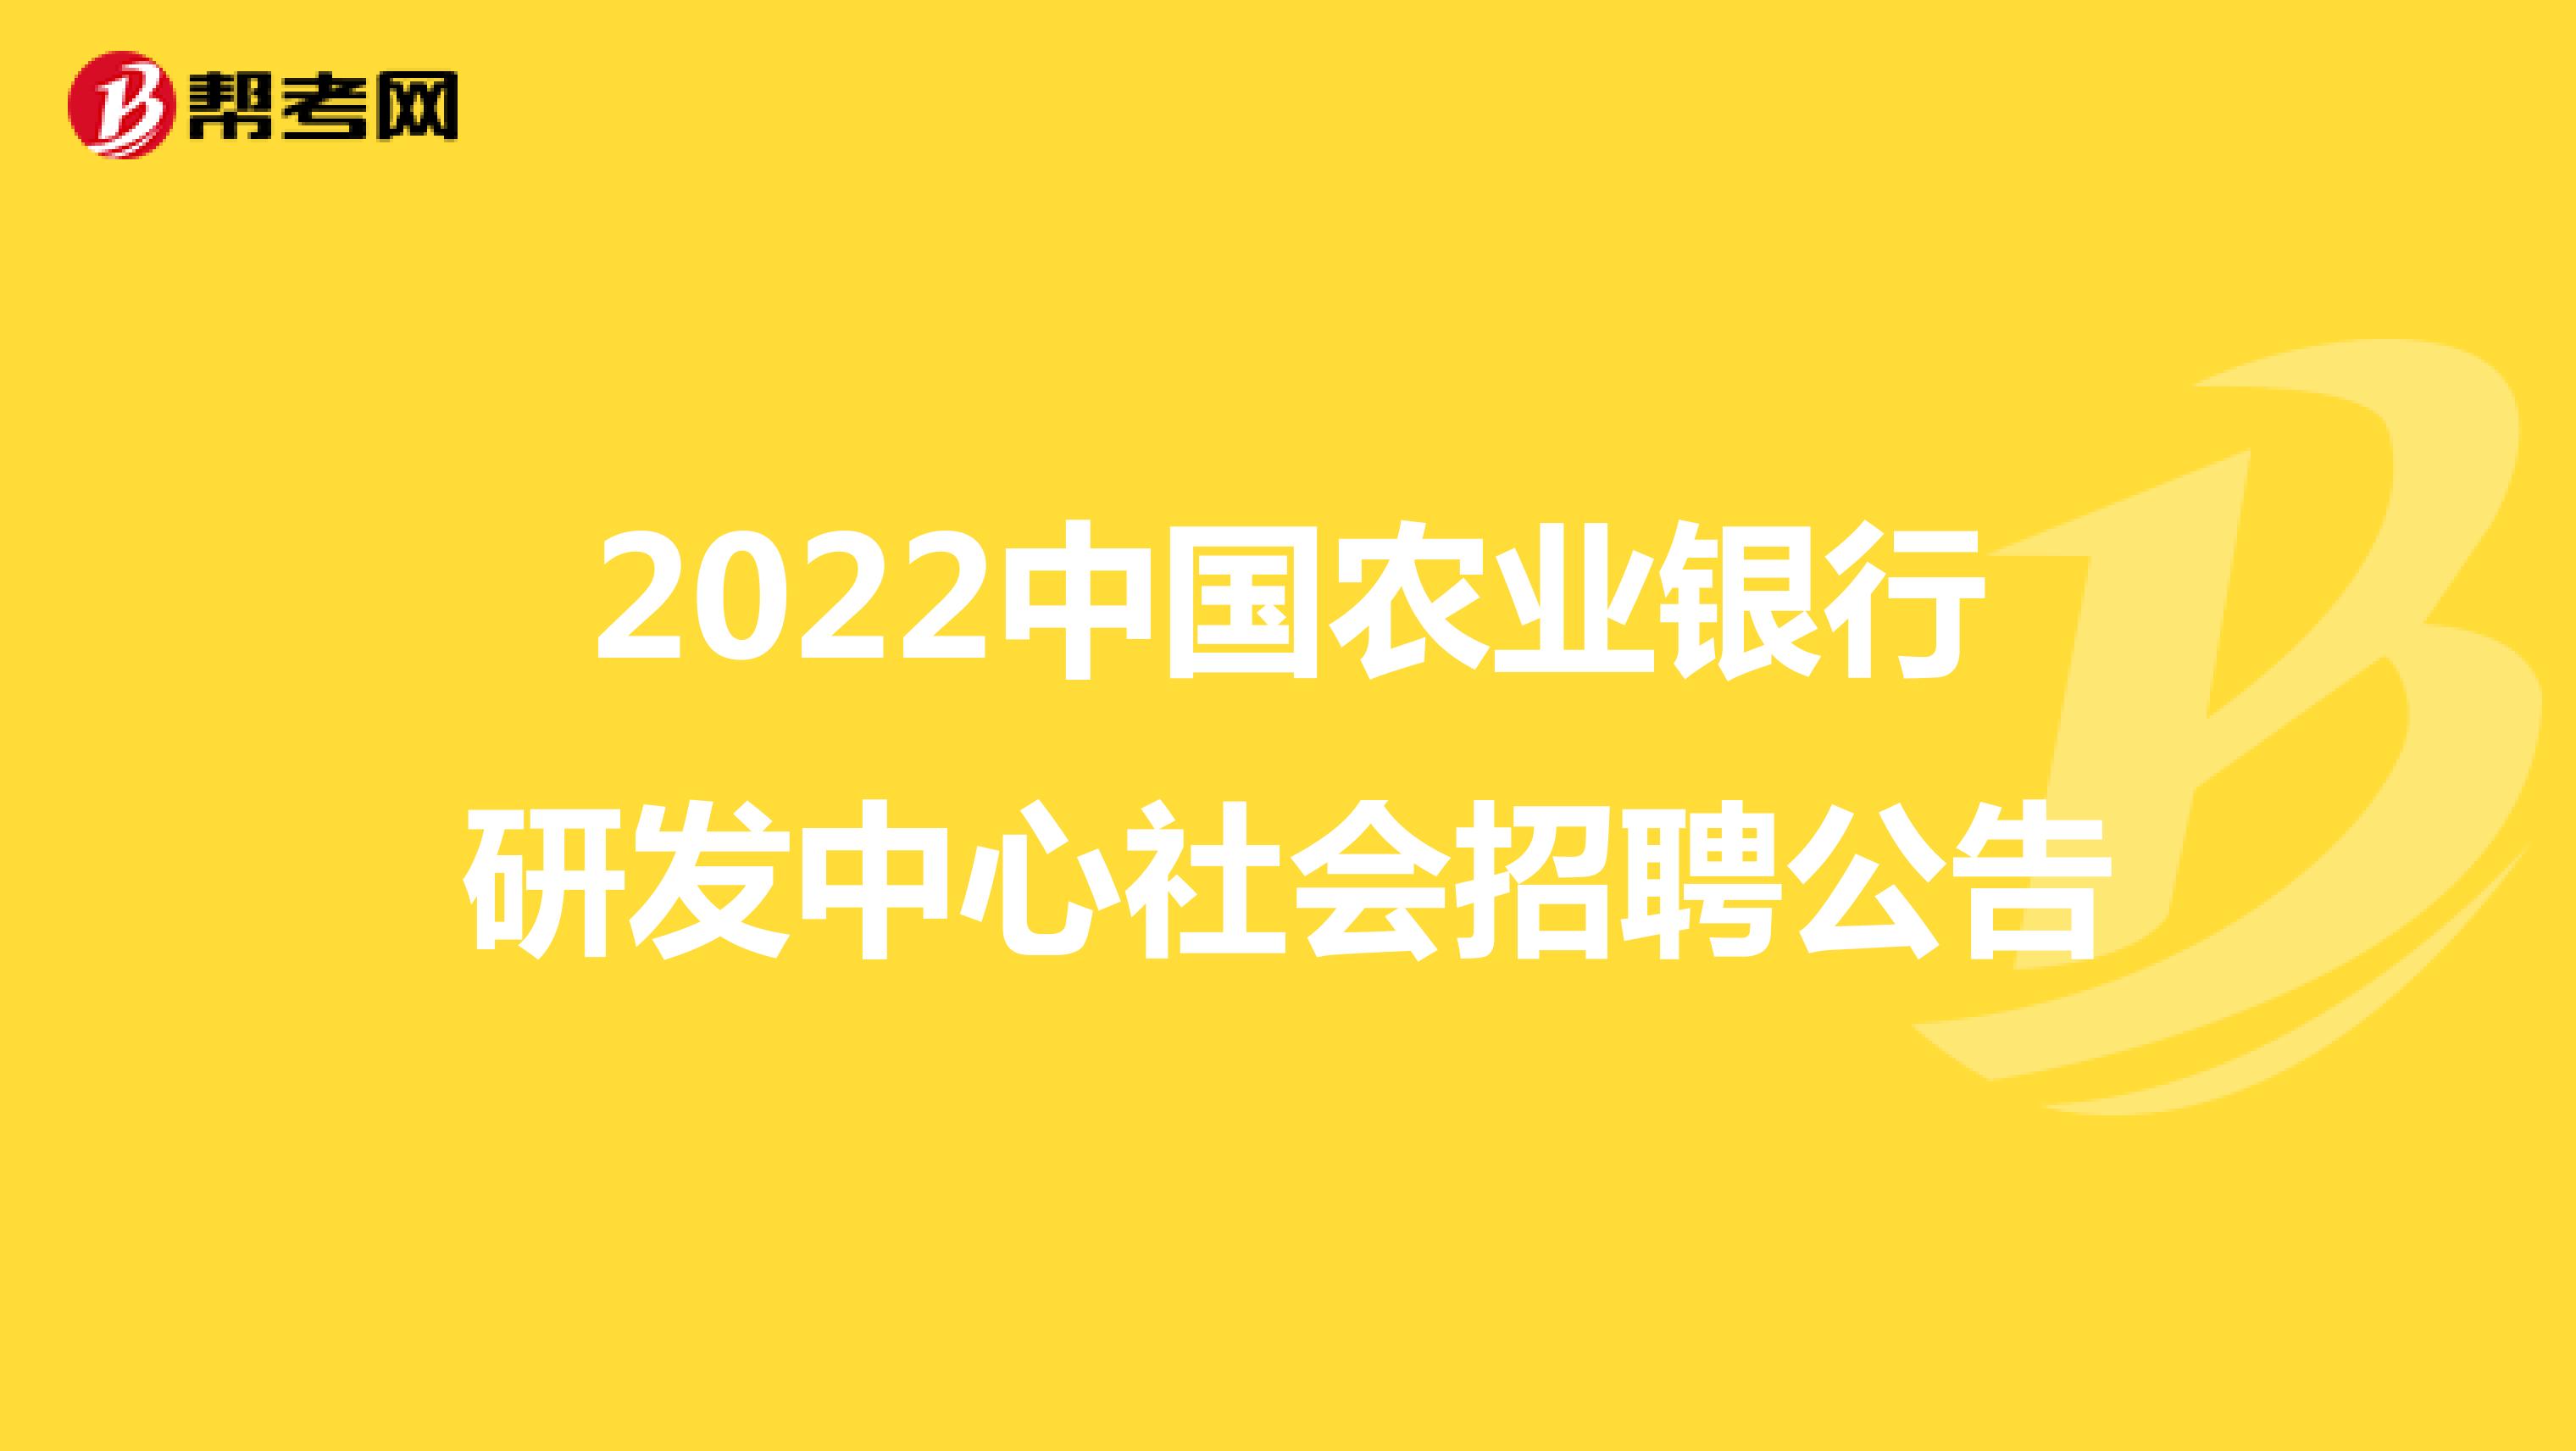 2022中國農業銀行研發中心社會招聘公告